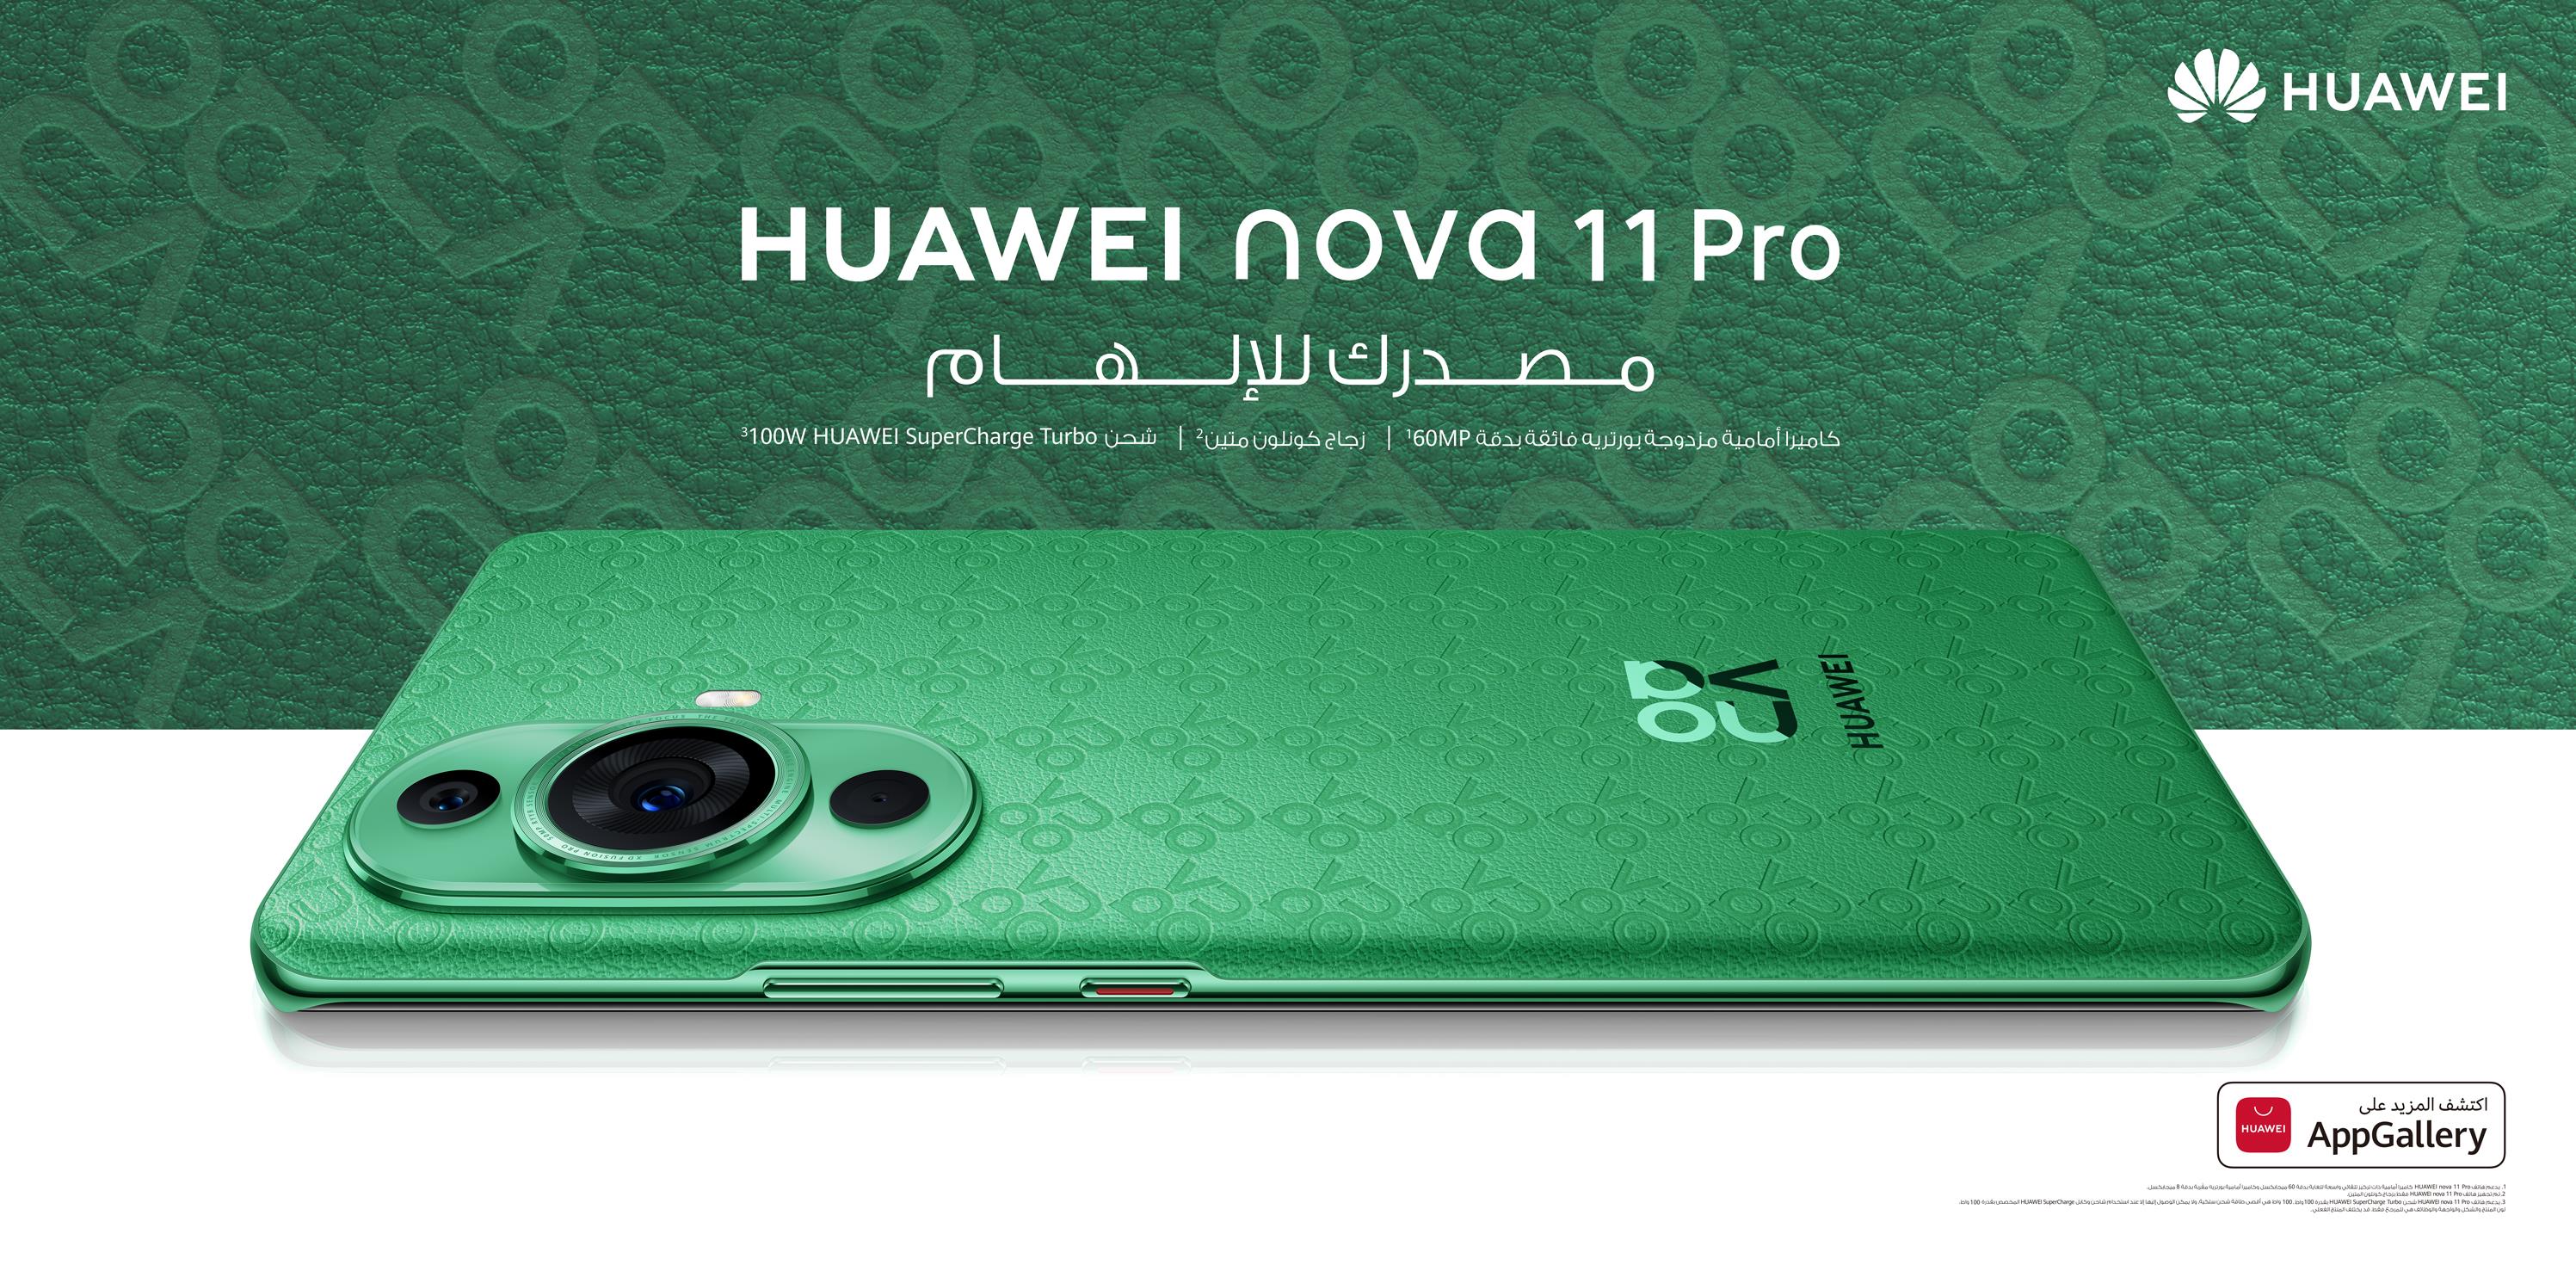  هاتف nova 11 pro من هواوي: الهاتف الذكي الأجمل والعصري مع أفضل كاميرا أمامية وأسرع قدرات شحن